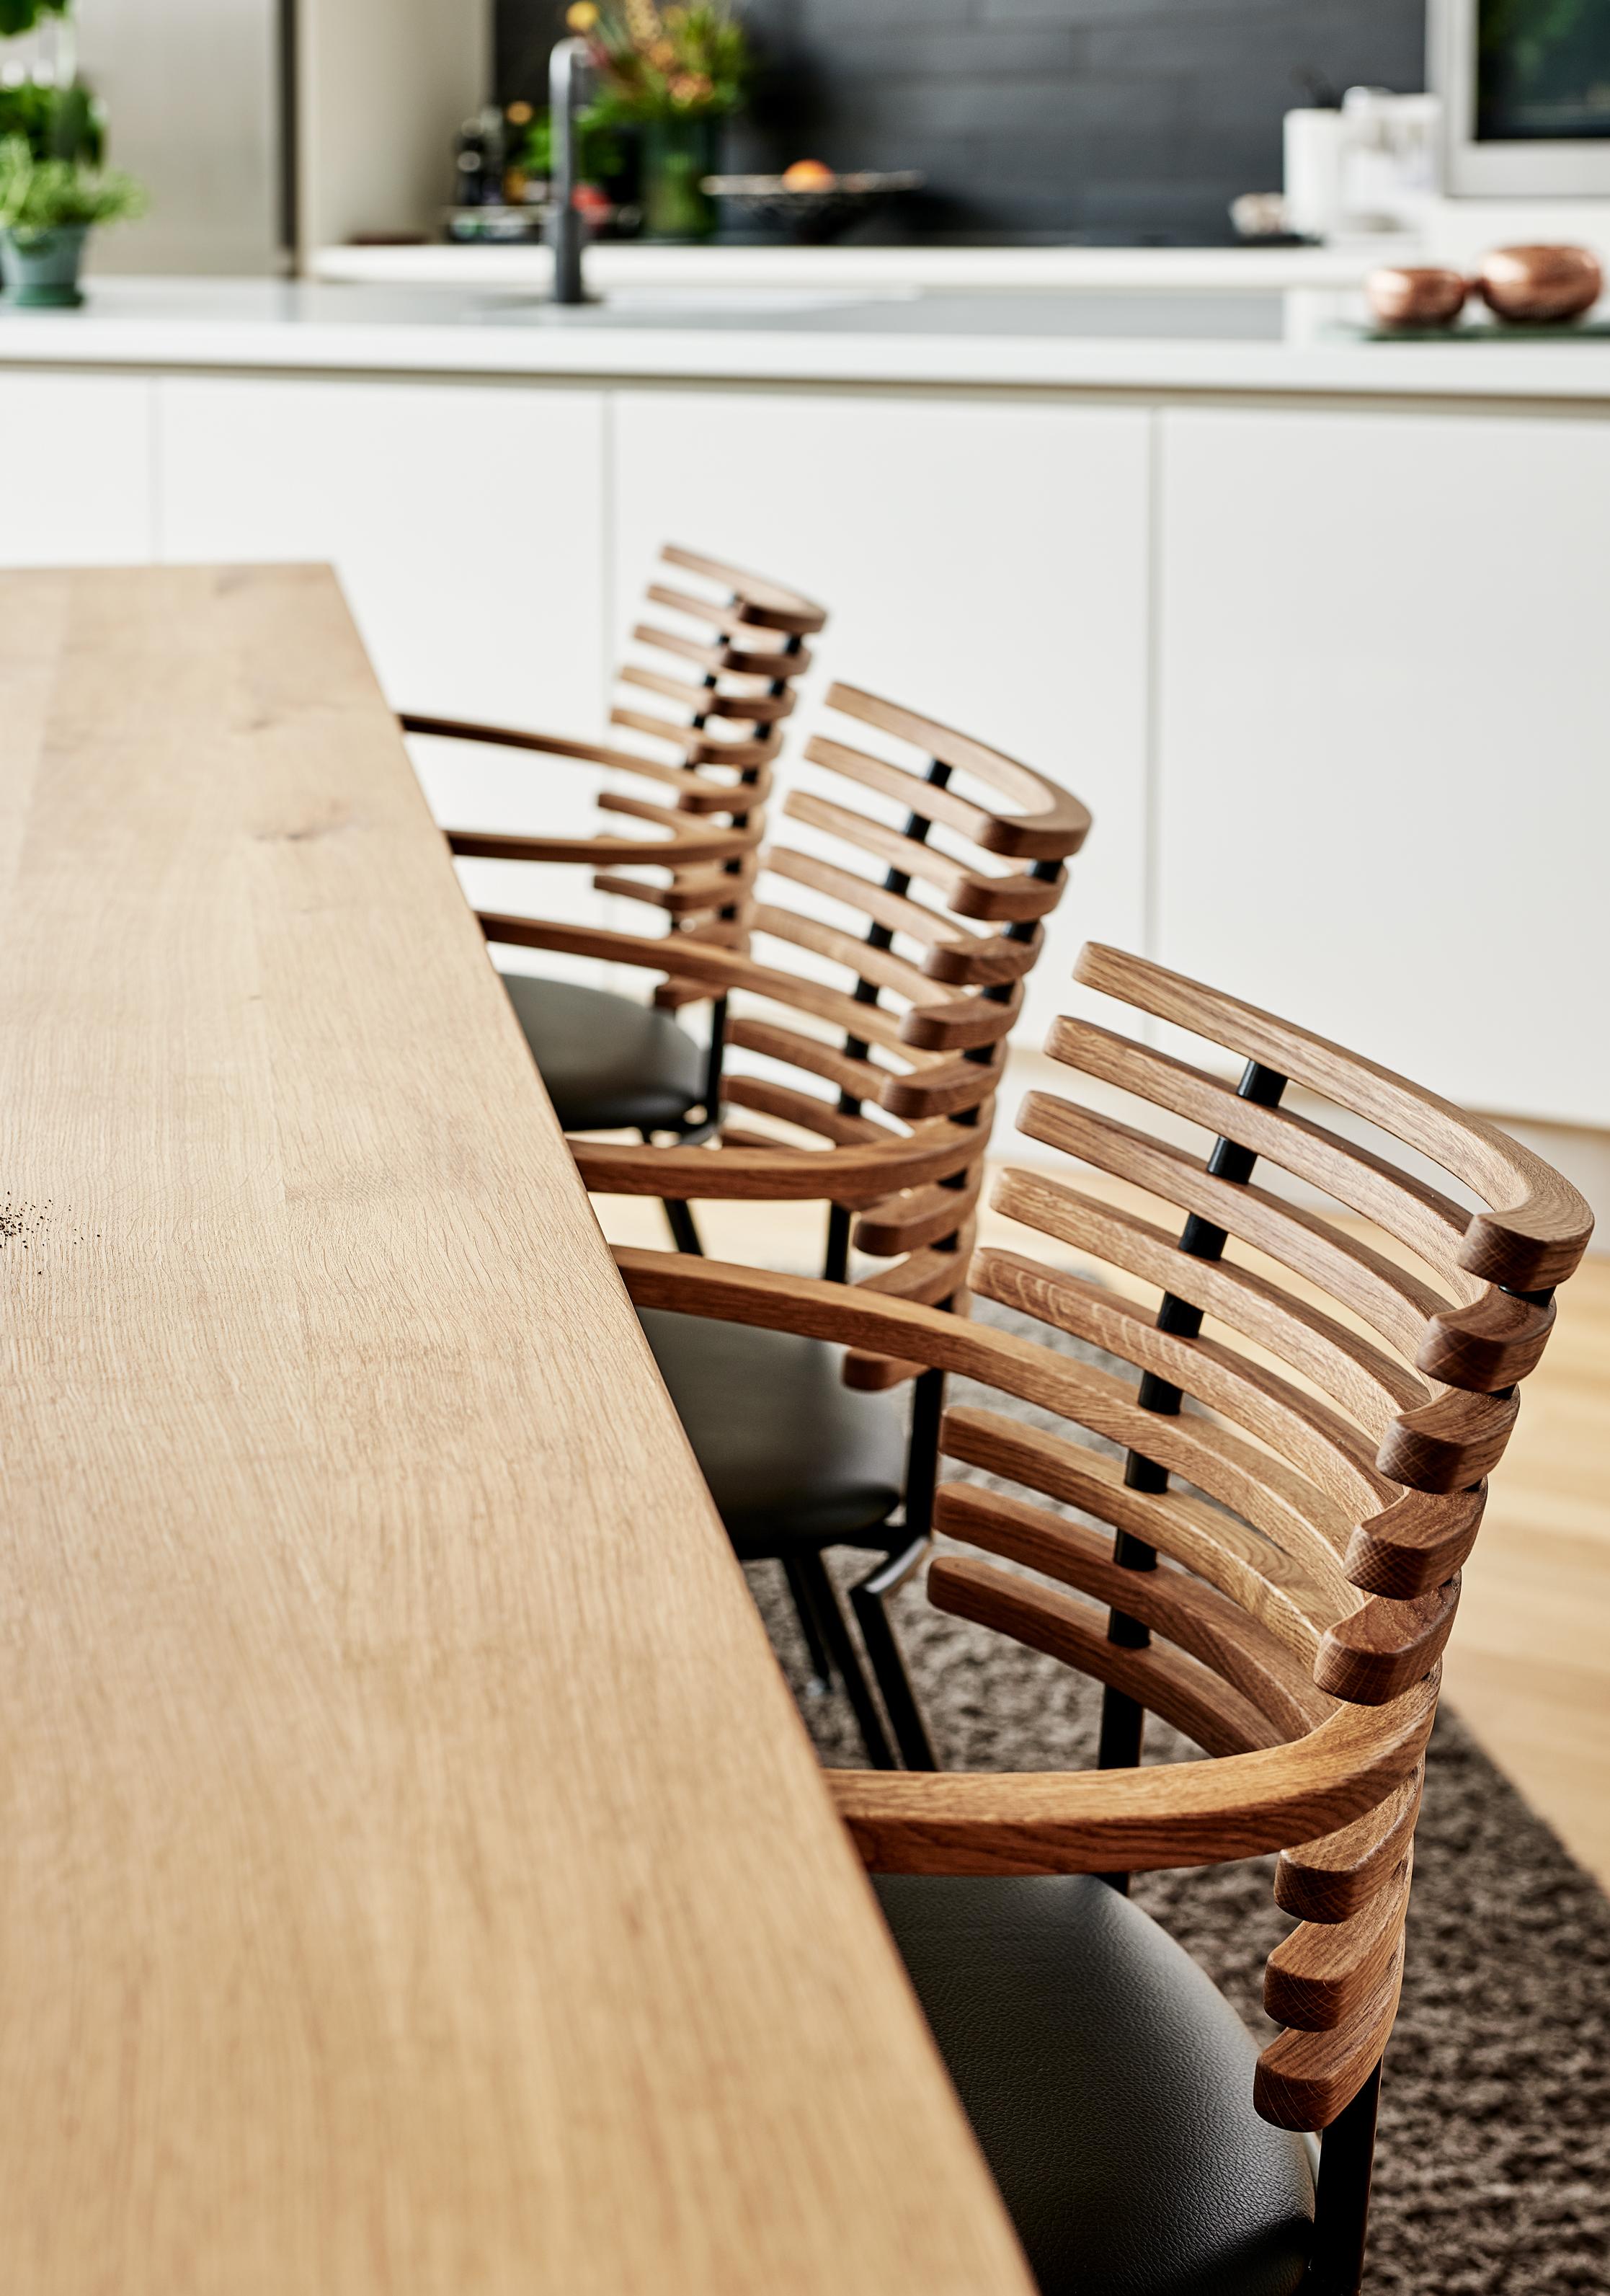 Le designer Henrik Lehm est à l'origine de la chaise Tiger, unique en son genre. Cette chaise a été créée pour répondre aux besoins naturels des personnes en matière d'assise sans compromettre l'élégance et la pureté de ses lignes.

L'emblématique